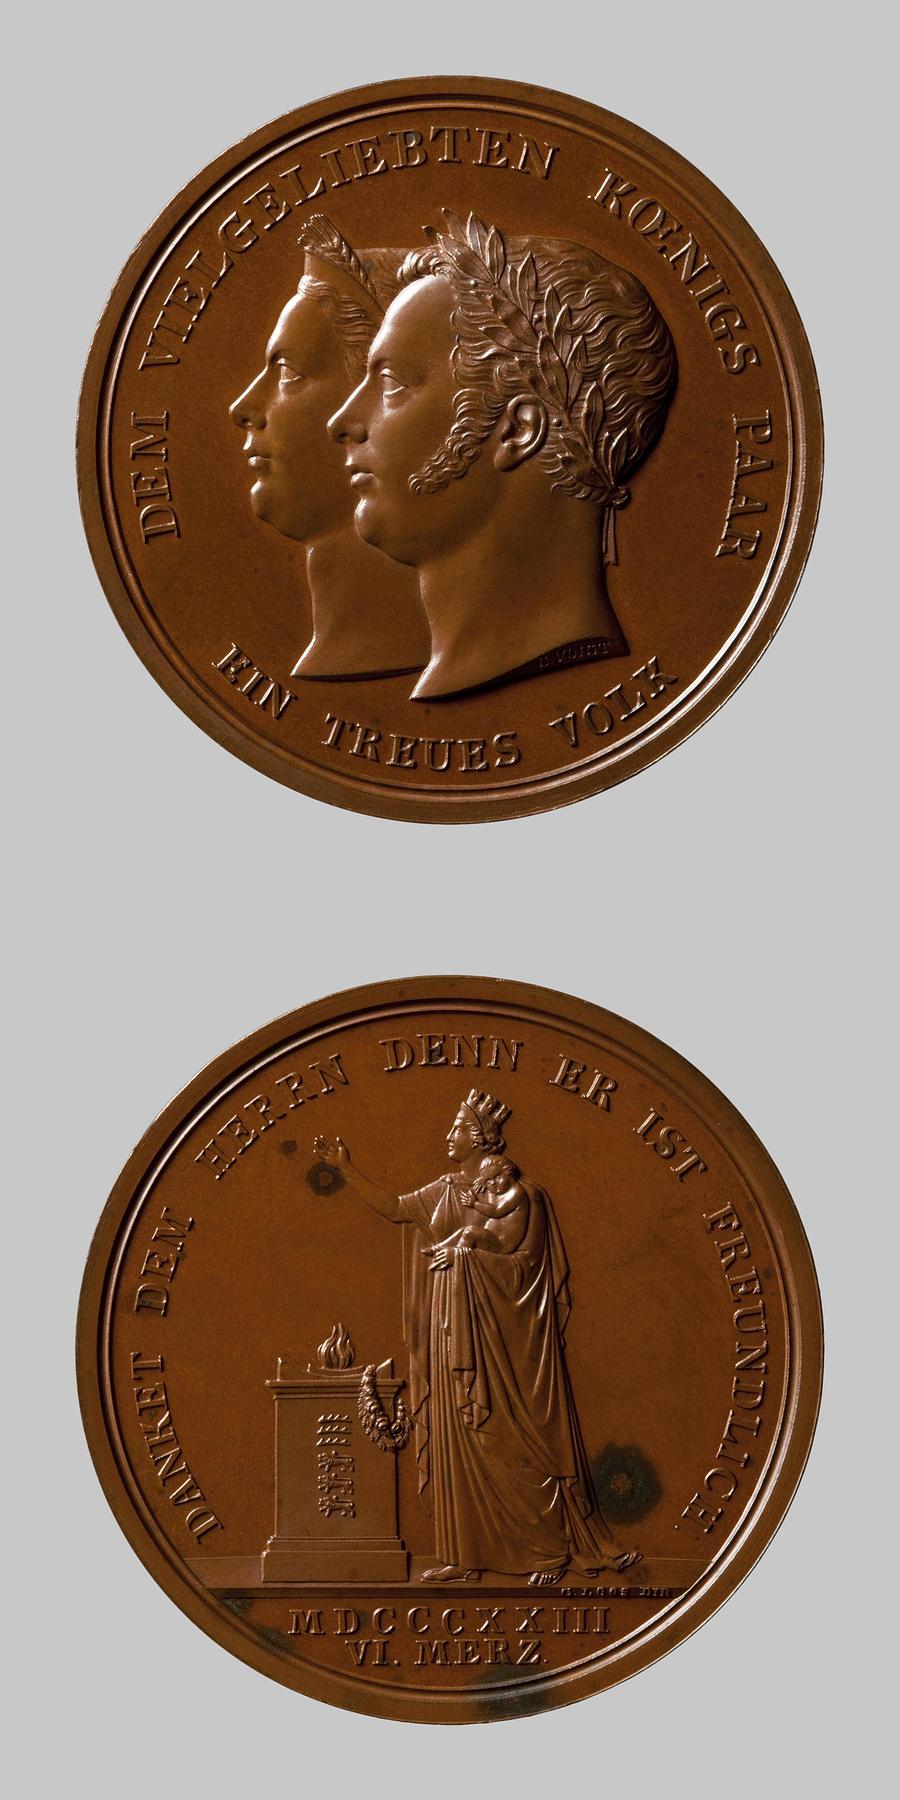 Medaljens forside: Kong Wilhelm 1. og dronning Pauline af Württemberg. Medaljens bagside: Württemberg takker Himlen for den nye tronarving ved fædrelandets alter, F117